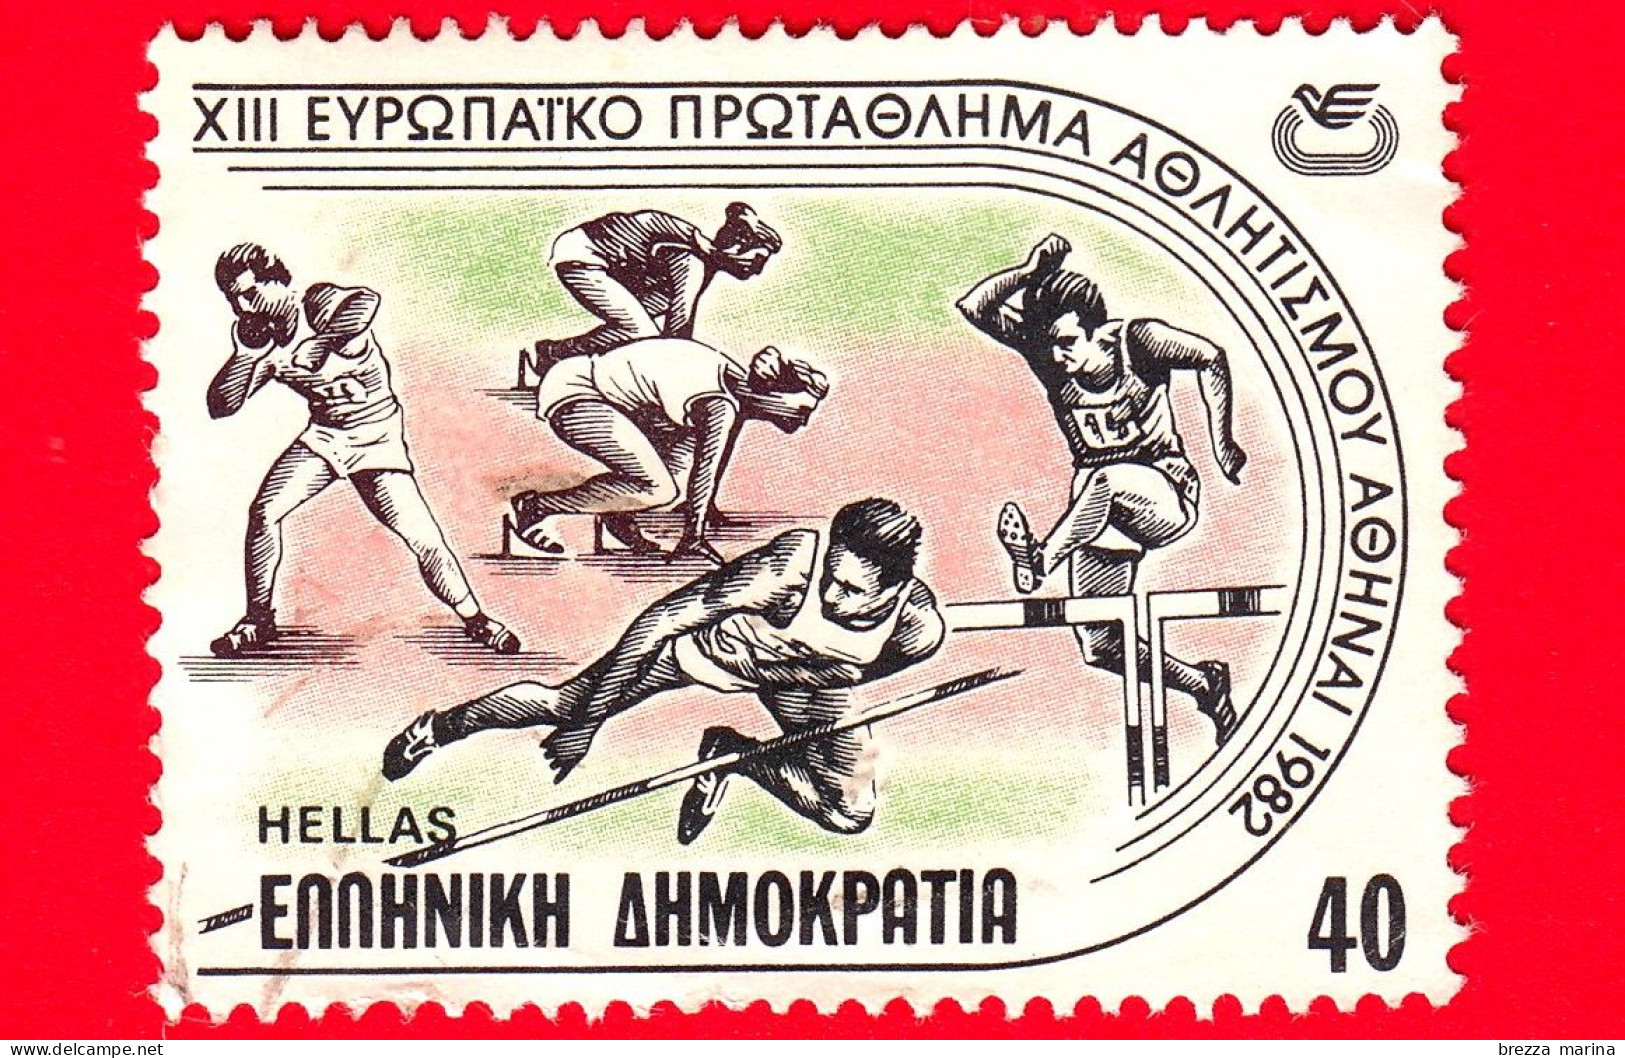 GRECIA - HELLAS - Usato - 1982 - Campionato Europeo Di Atletica - Corsa - Getto Del Peso - Salto In Alto - 40 - Usati